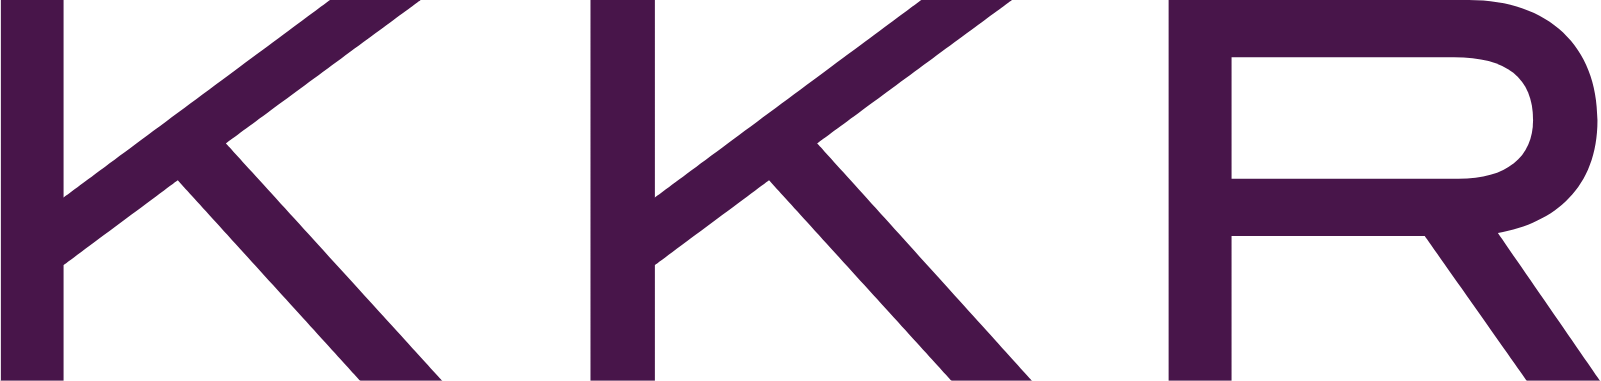 KKR & Co. logo (PNG transparent)